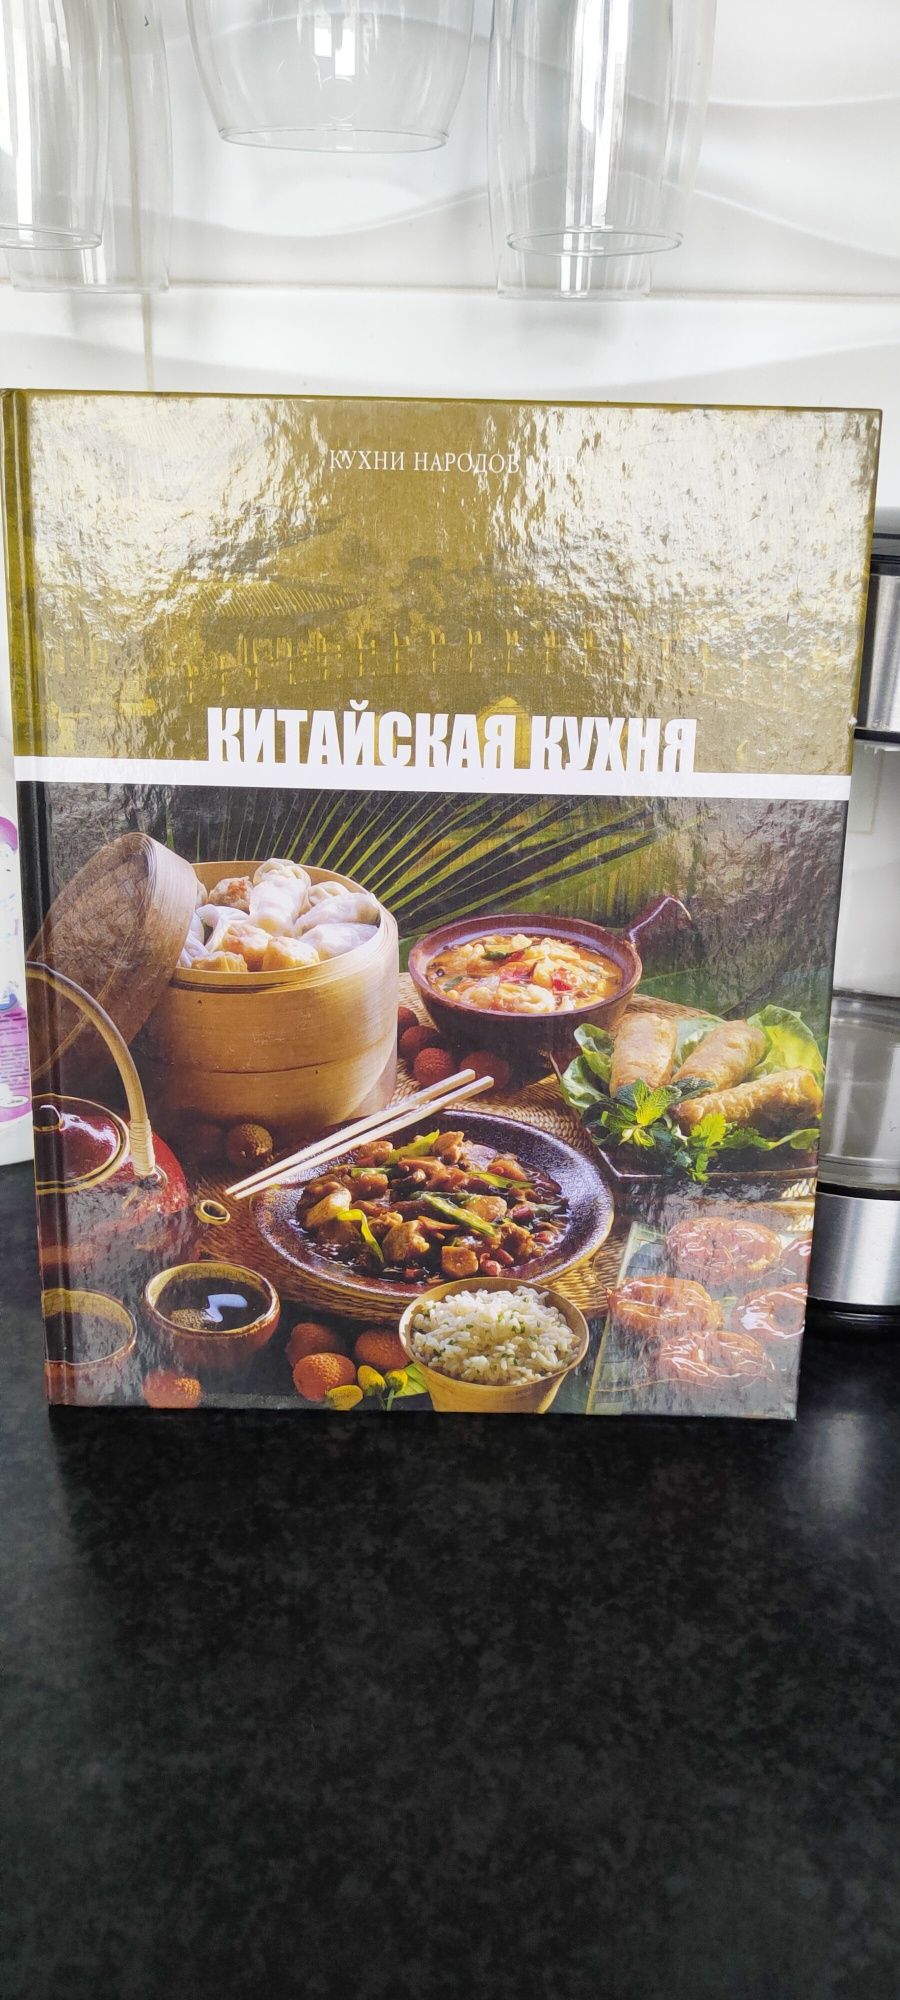 Книга рецептов китайской кухни